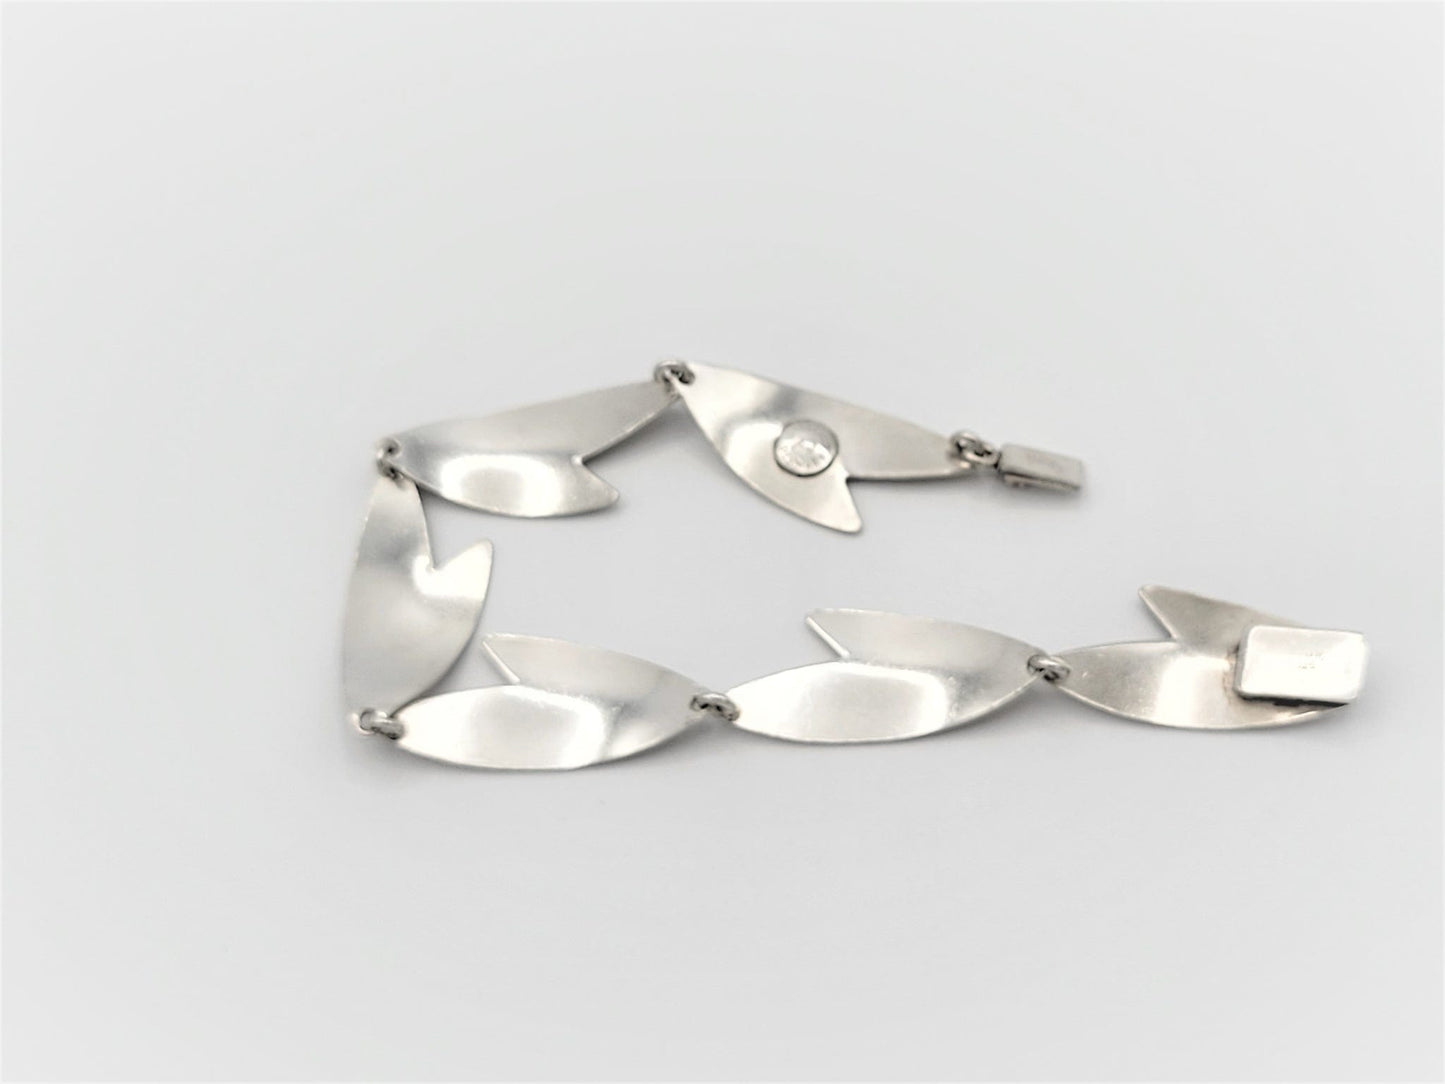 Arne Johansen Jewelry Danish Designer Arne Johansen Modernist Sterling Boomerang Bracelet 1960s